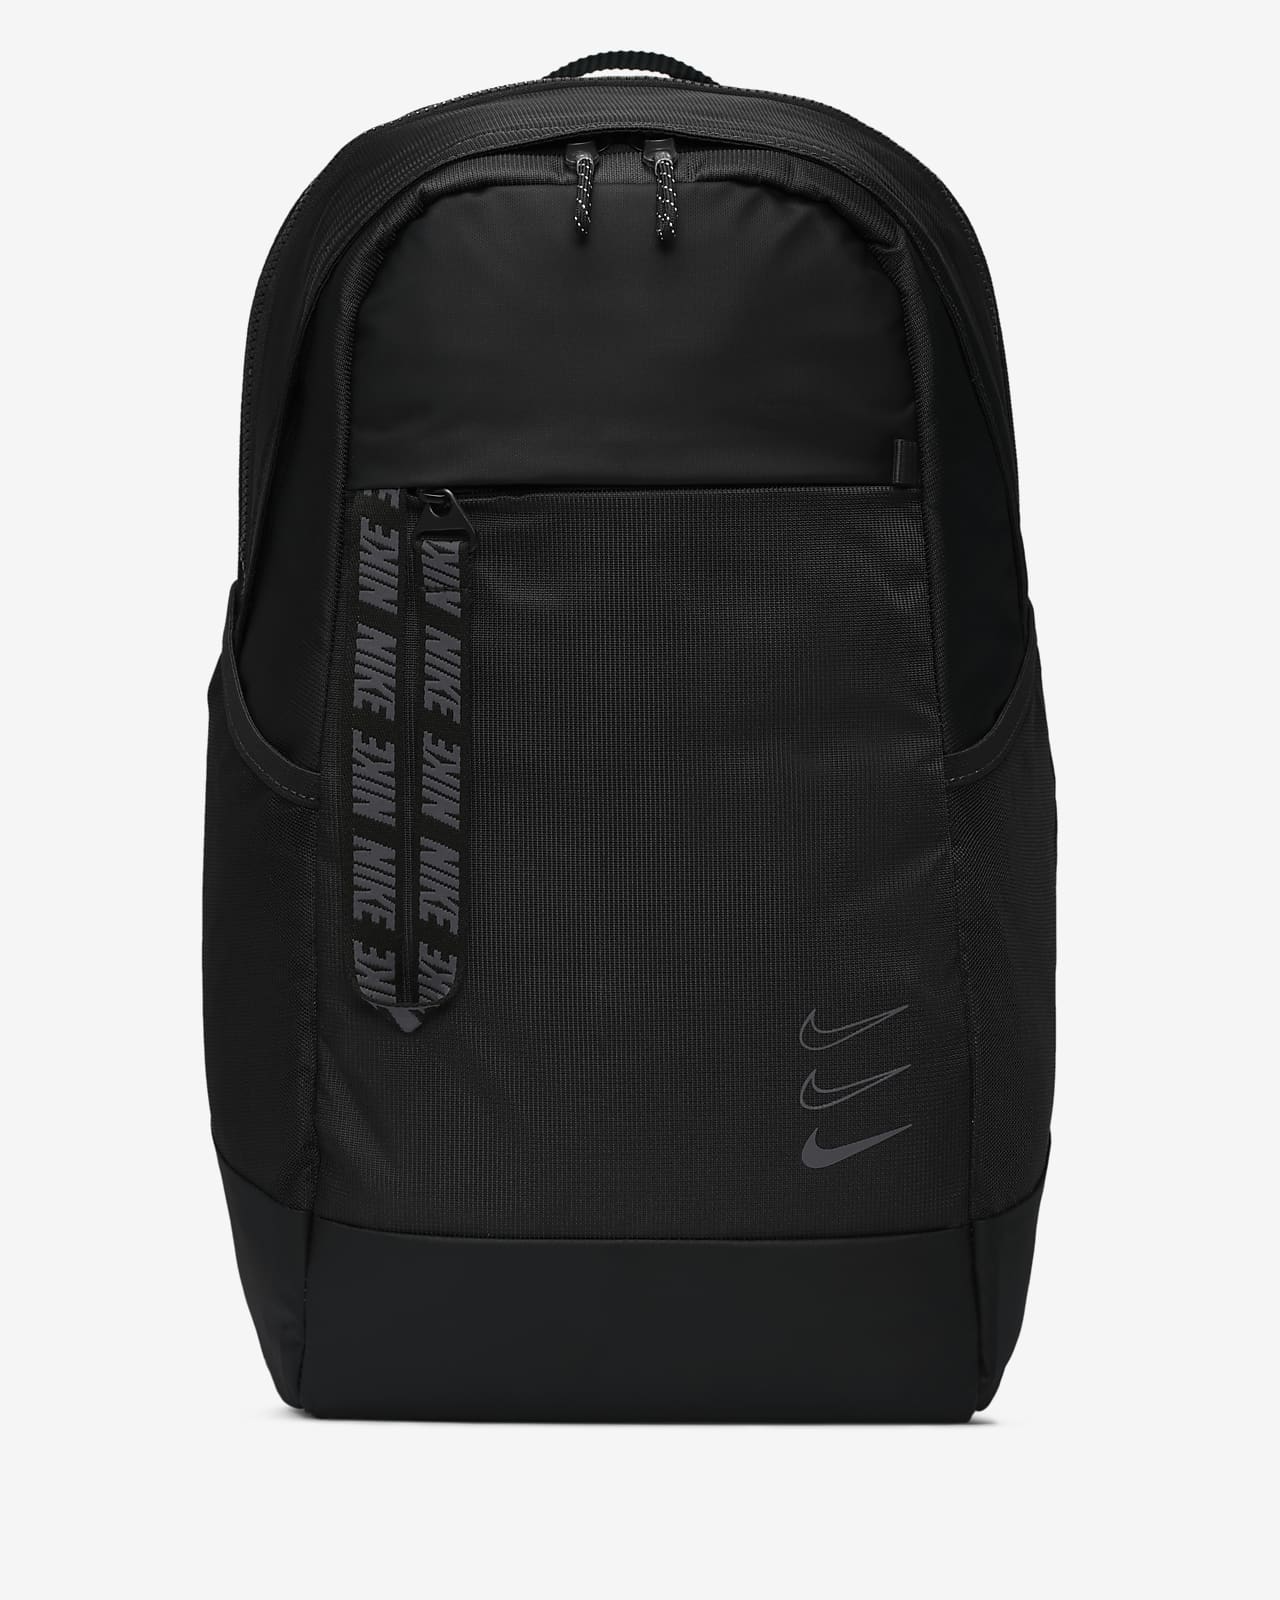 all black backpack nike